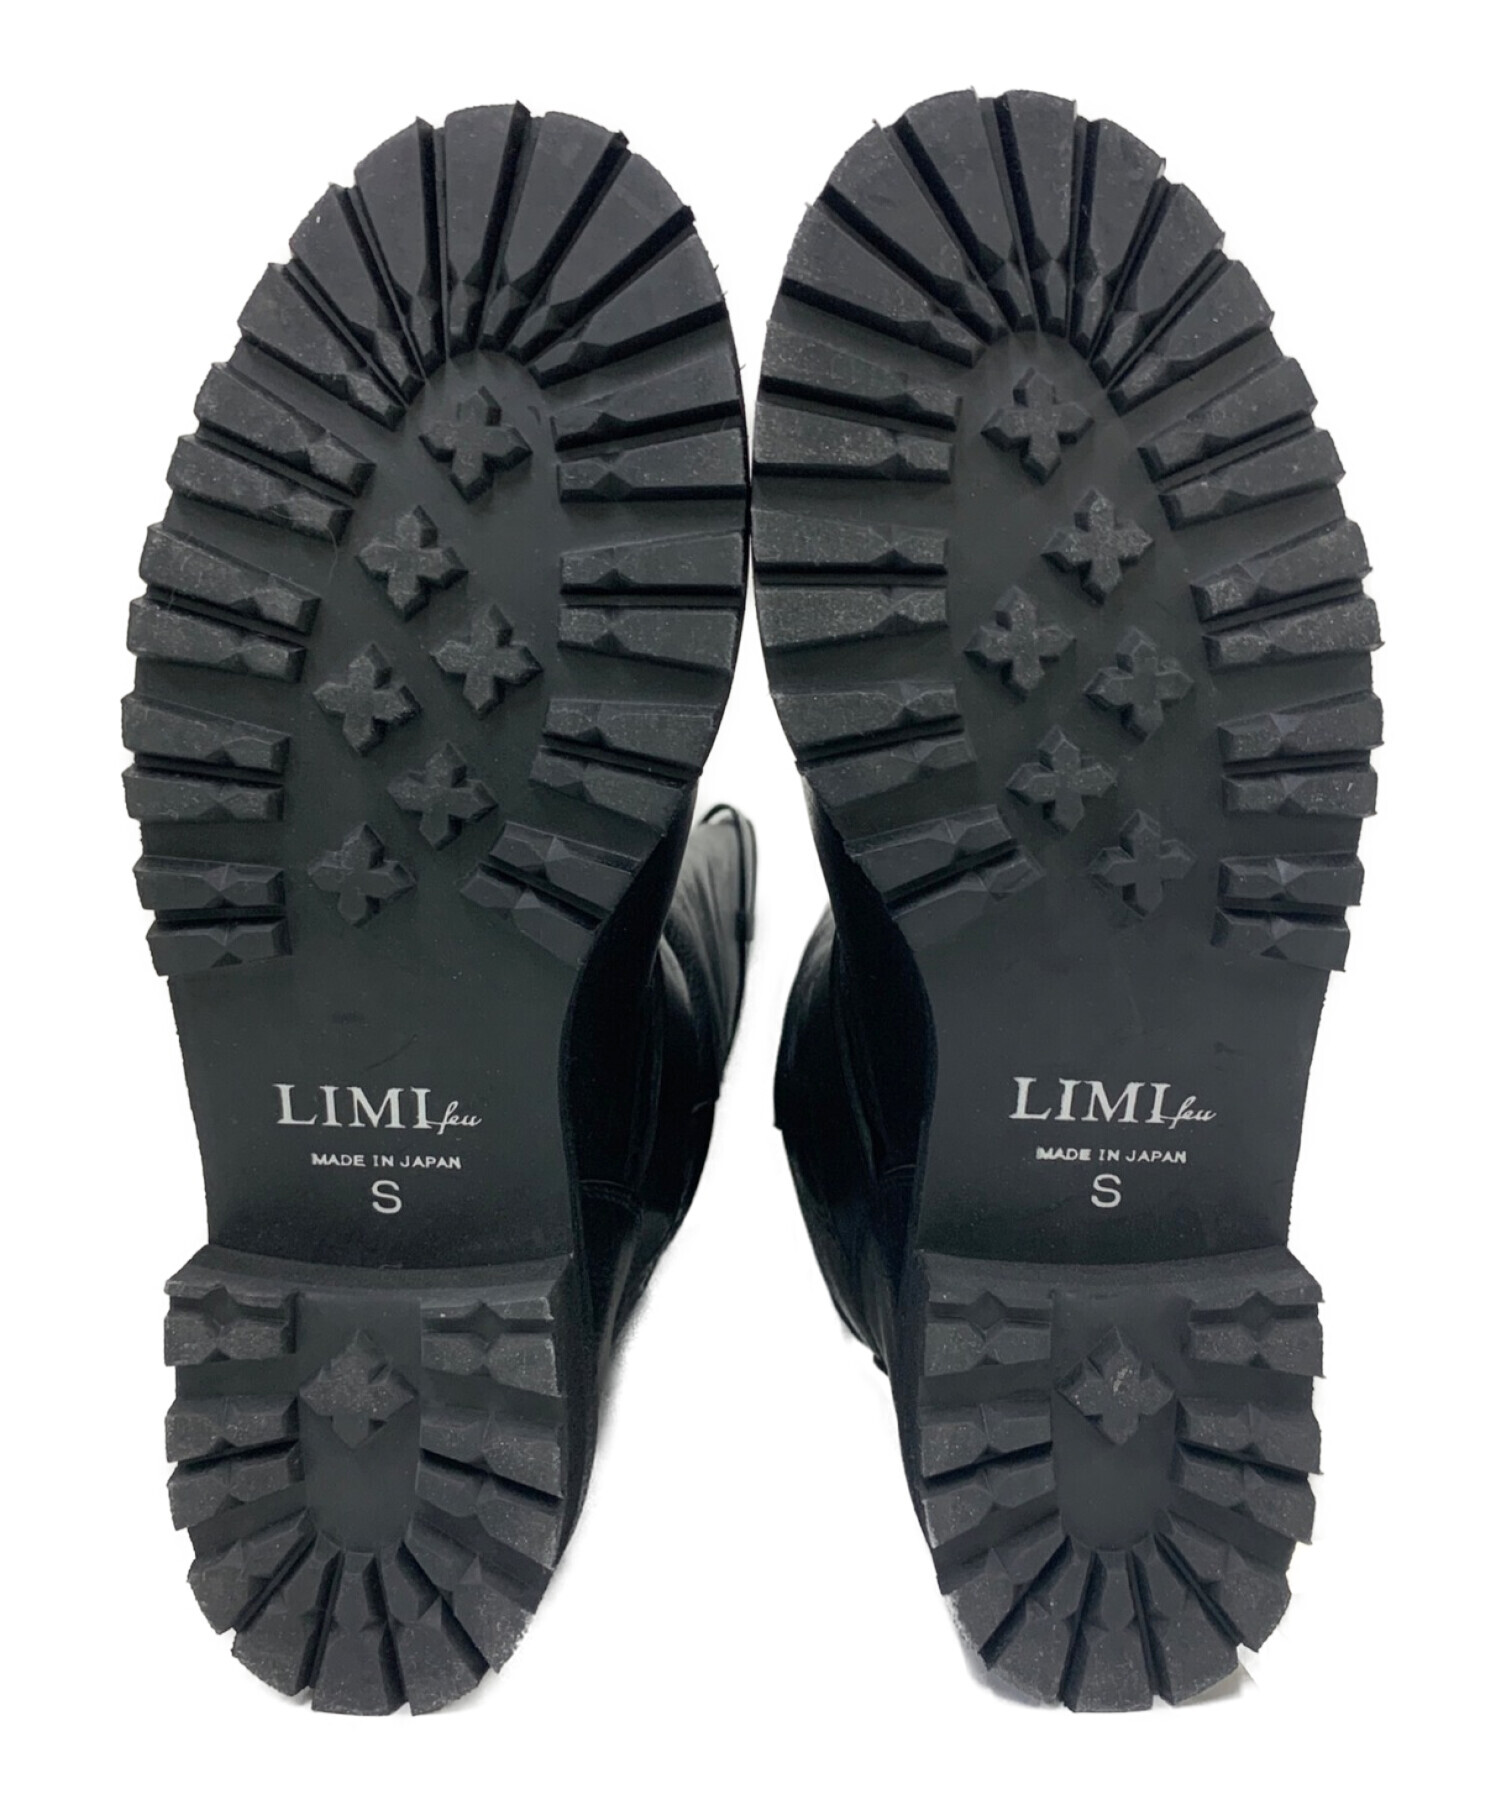 LIMI feu (リミフゥ) エンジニアブーツ ブラック サイズ:S